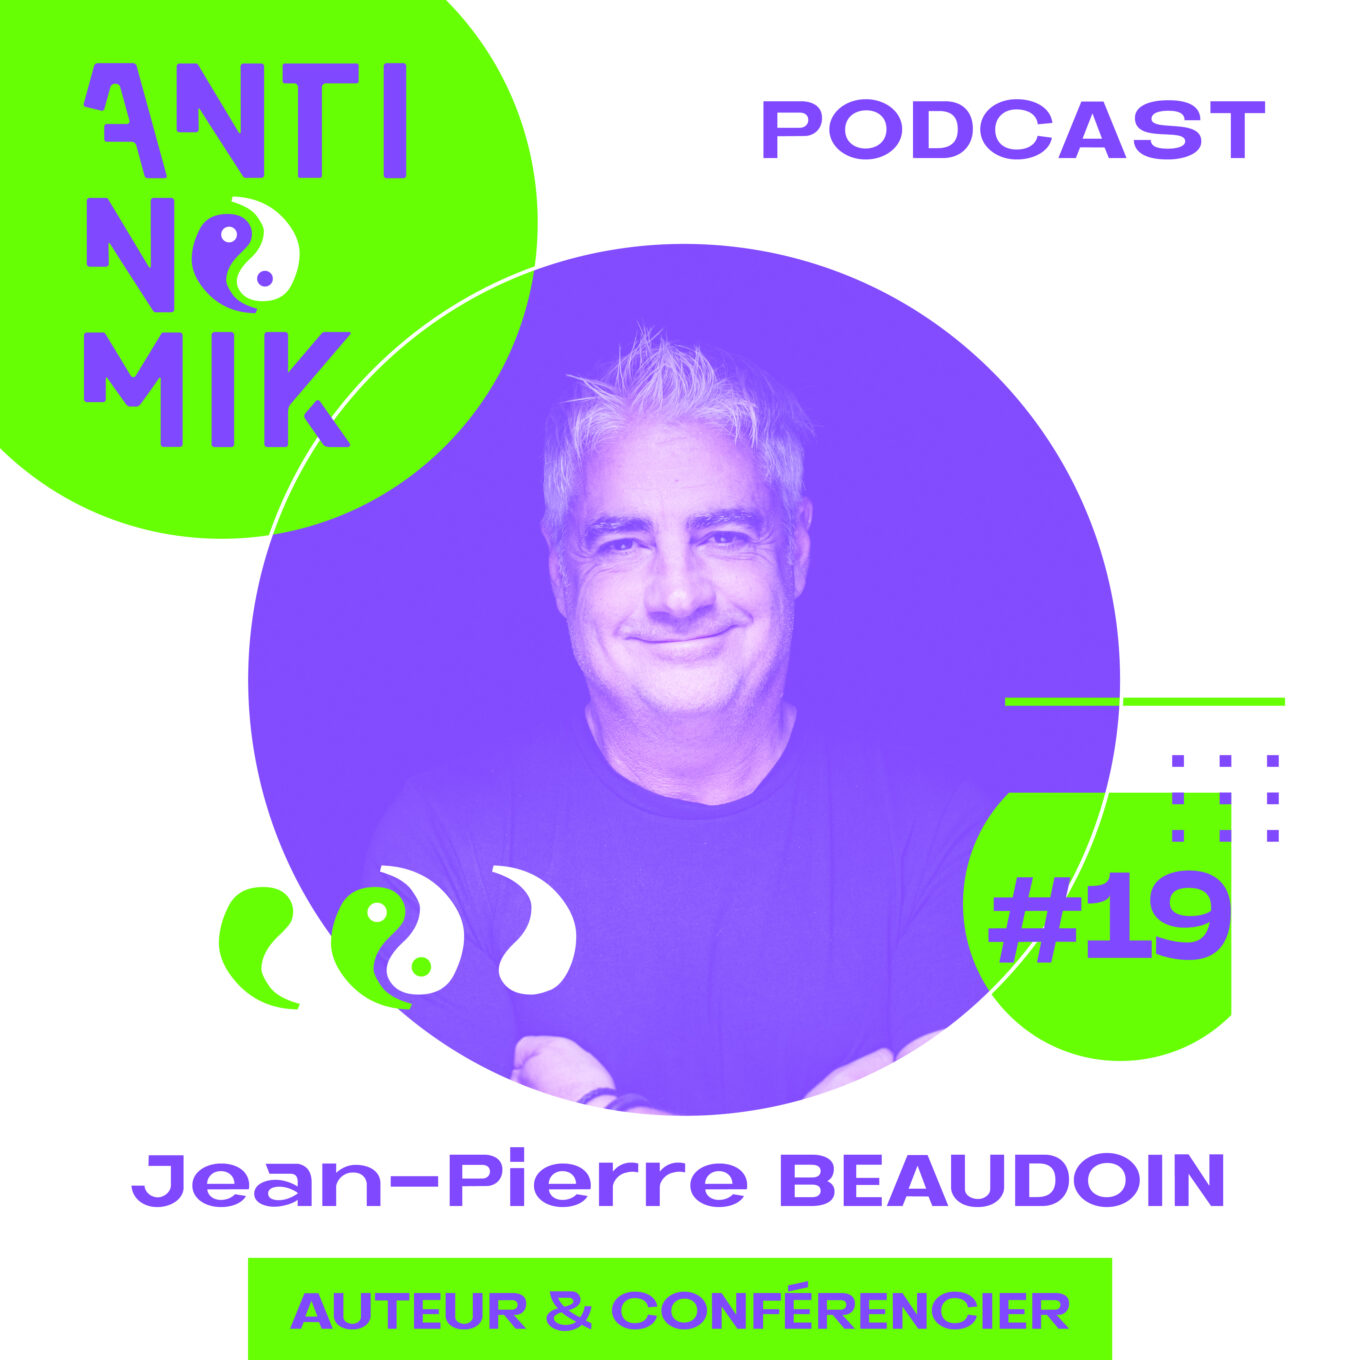 Jean-Pierre BEAUDOIN – Auteur & Conférencier - Mobile